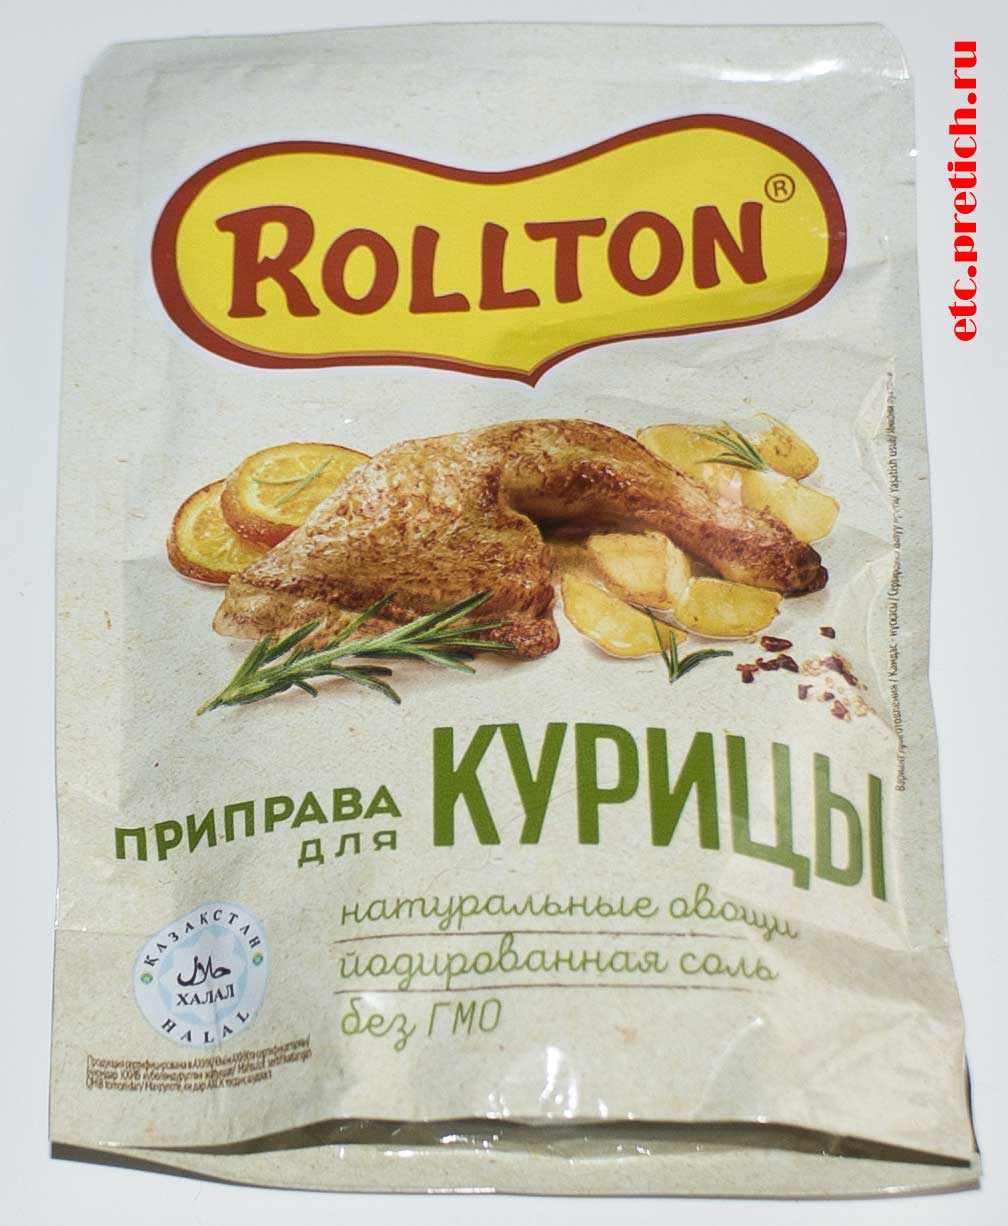 Отзыв на Rollton приправа для курицы - произвольное название обычной